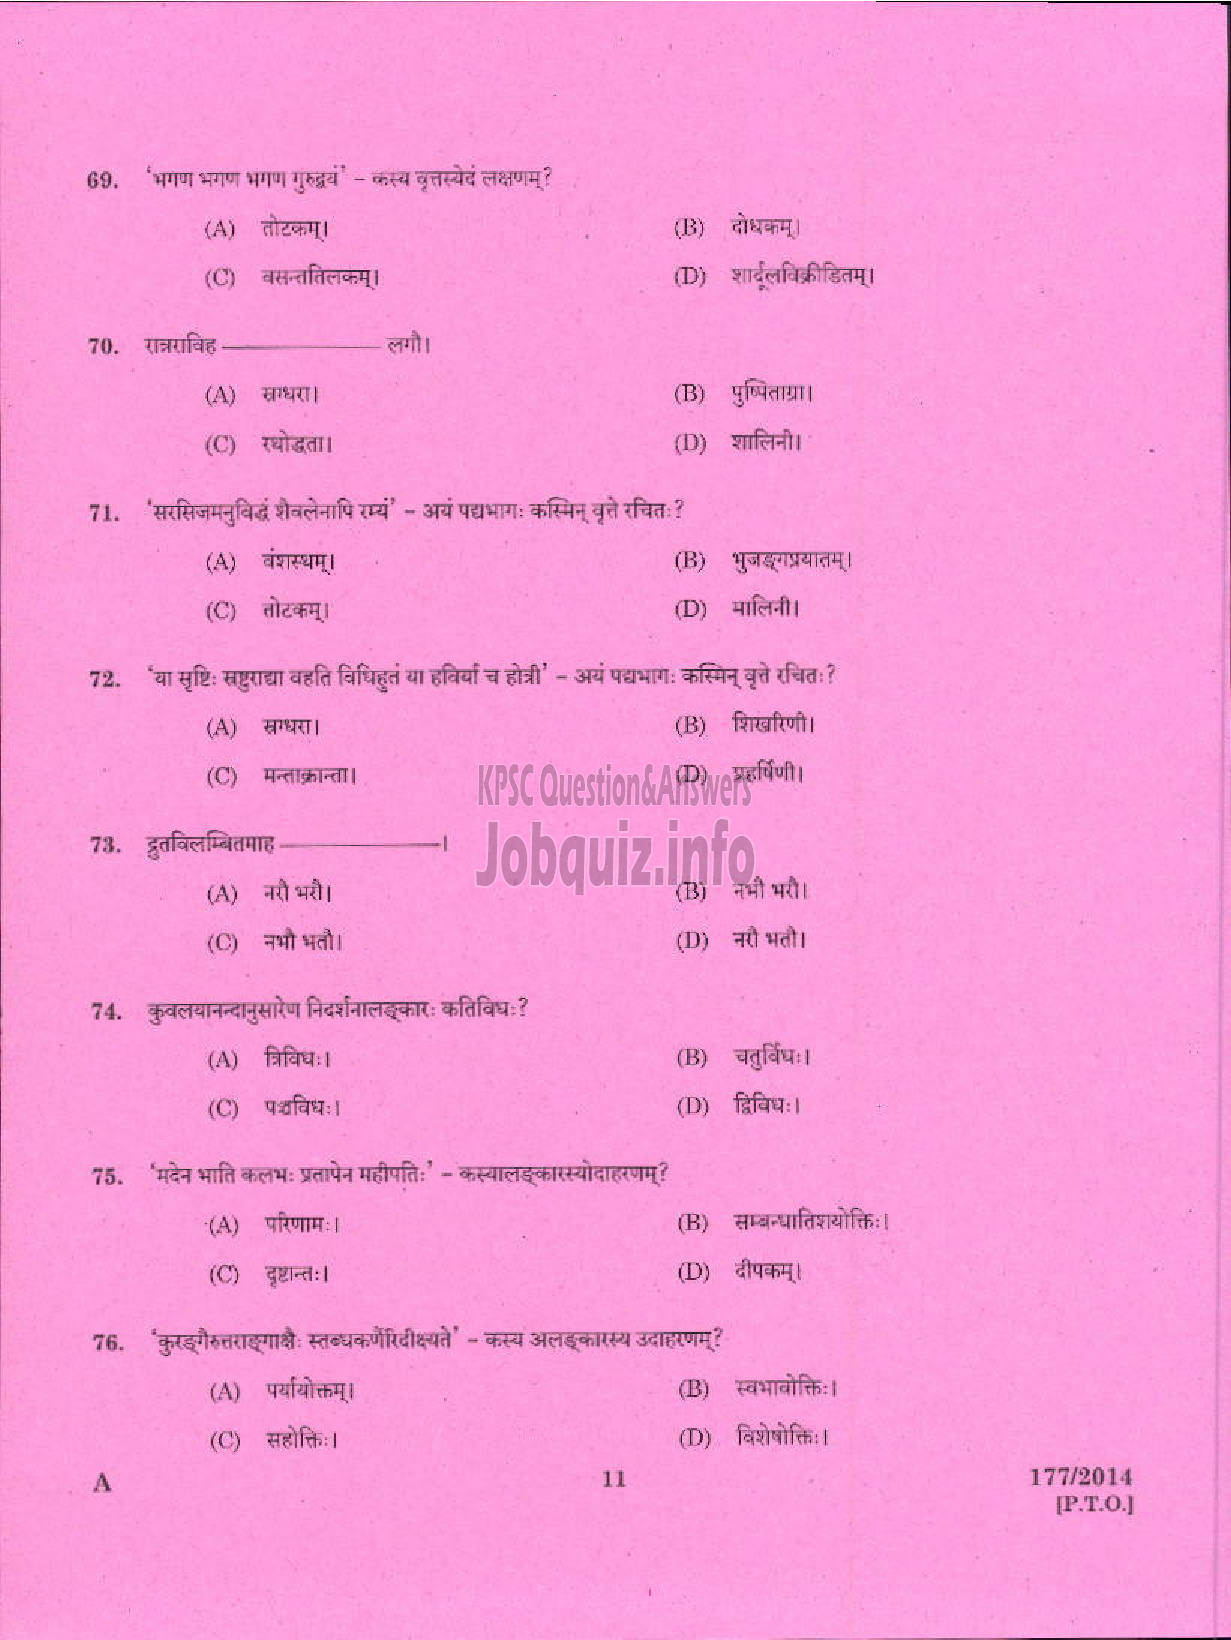 Kerala PSC Question Paper - PART TIME JUNIOR LANGUAGE TEACHER SANSKRIT EDUCATION-9